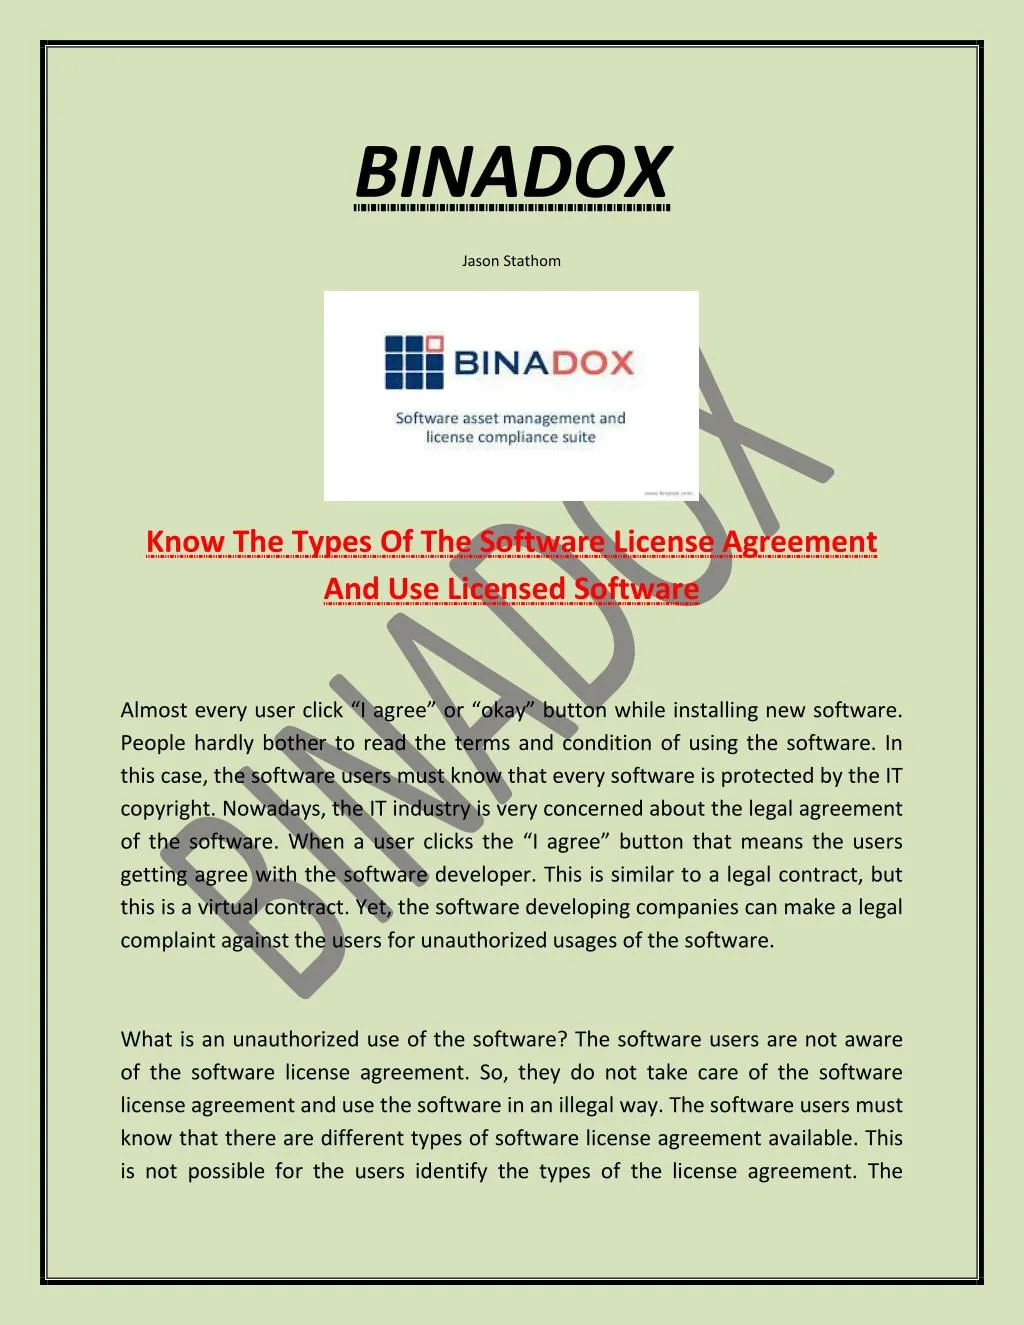 binadox